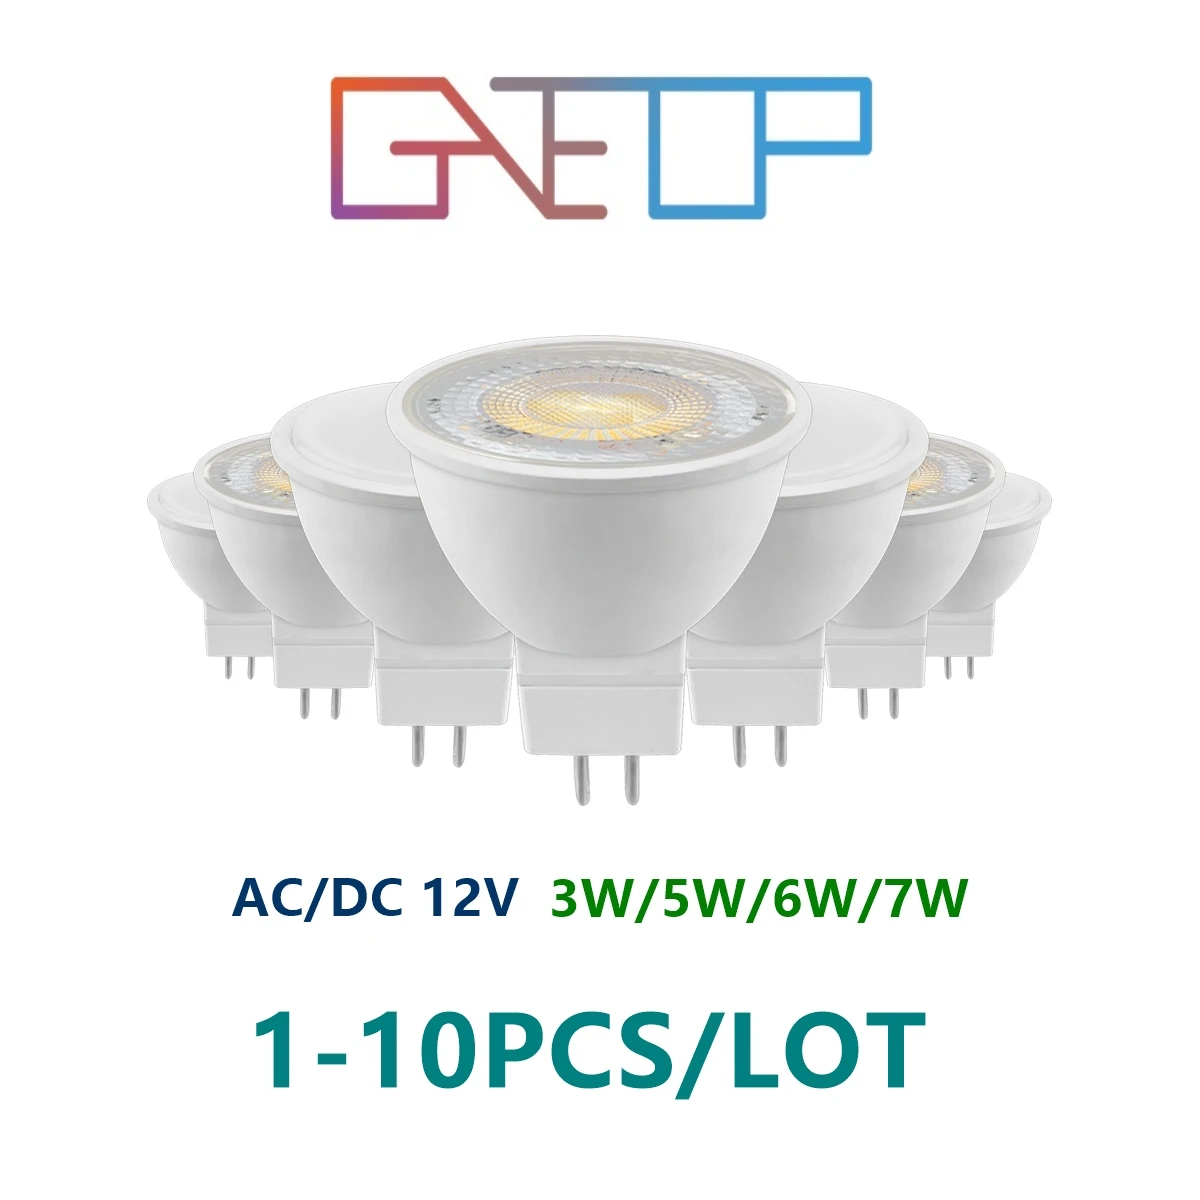 Светодиодный низковольтный прожектор AC/DC12V MR16 GU5.3 с углом свечения 38/120 градусов 3 Вт-7 Вт 3000 К-6000 К может заменить 20 Вт 50 Вт галогенную лампу